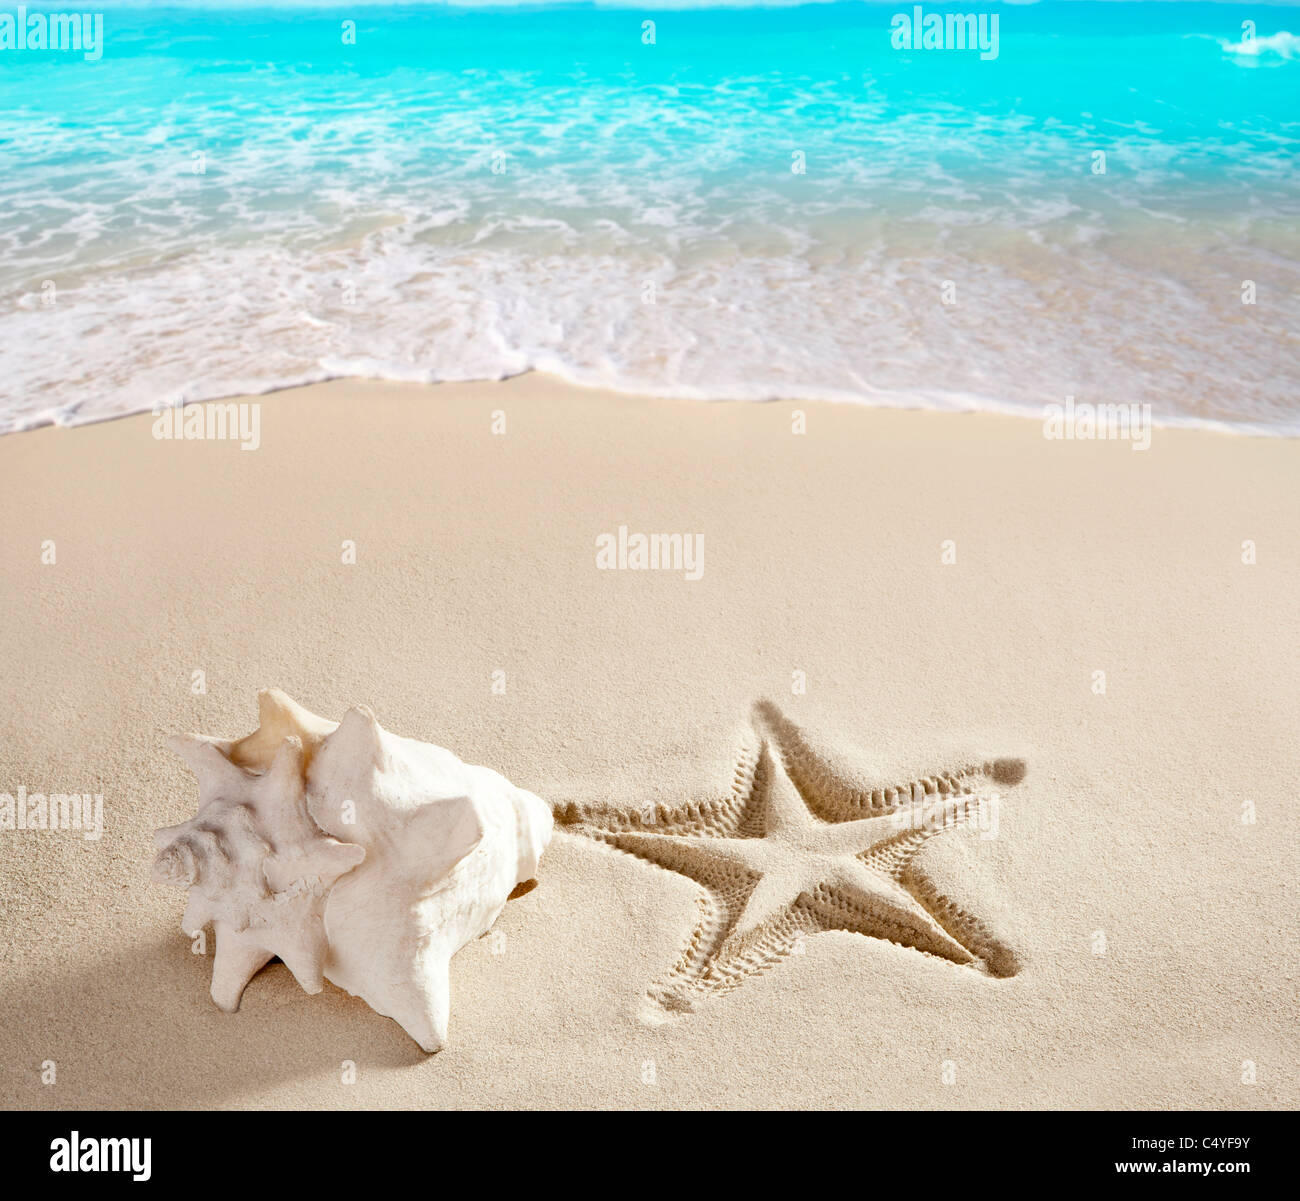 Karibik-Strand Muschel und Seesterne auf weißem Sand Sommer Urlaub Hintergrund gedruckt Stockfoto